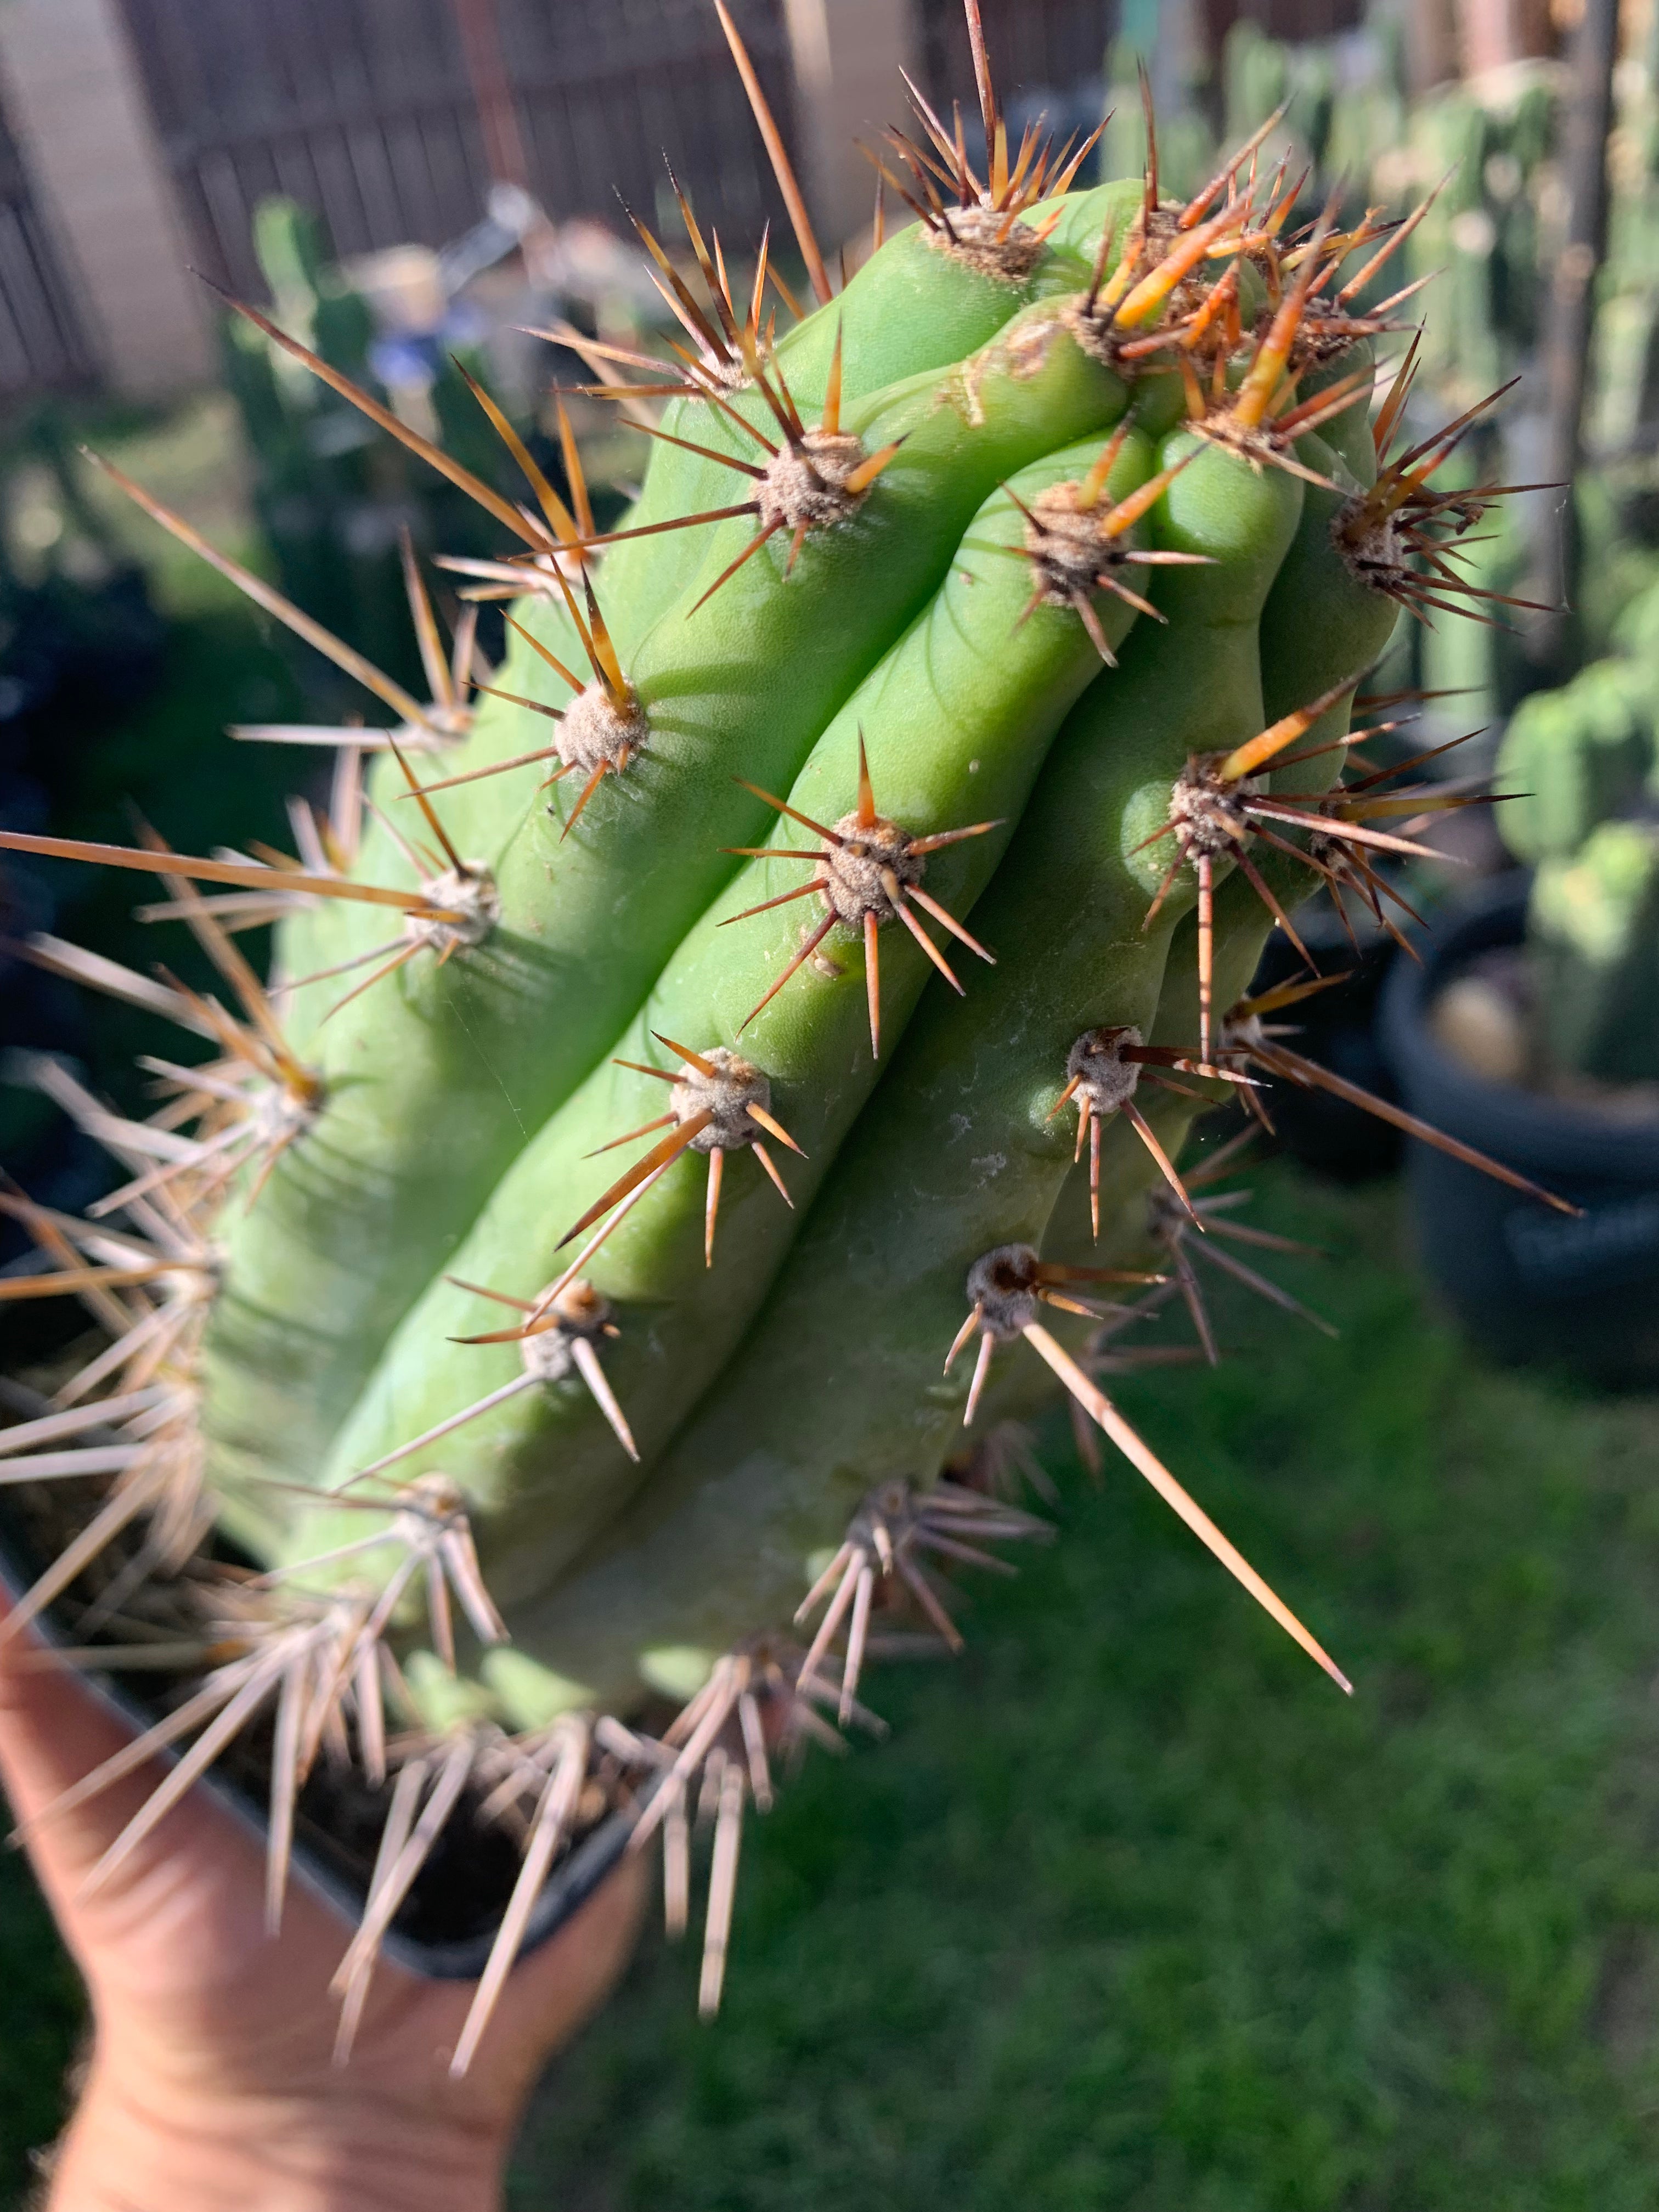 Rooted 9” Peruvianus